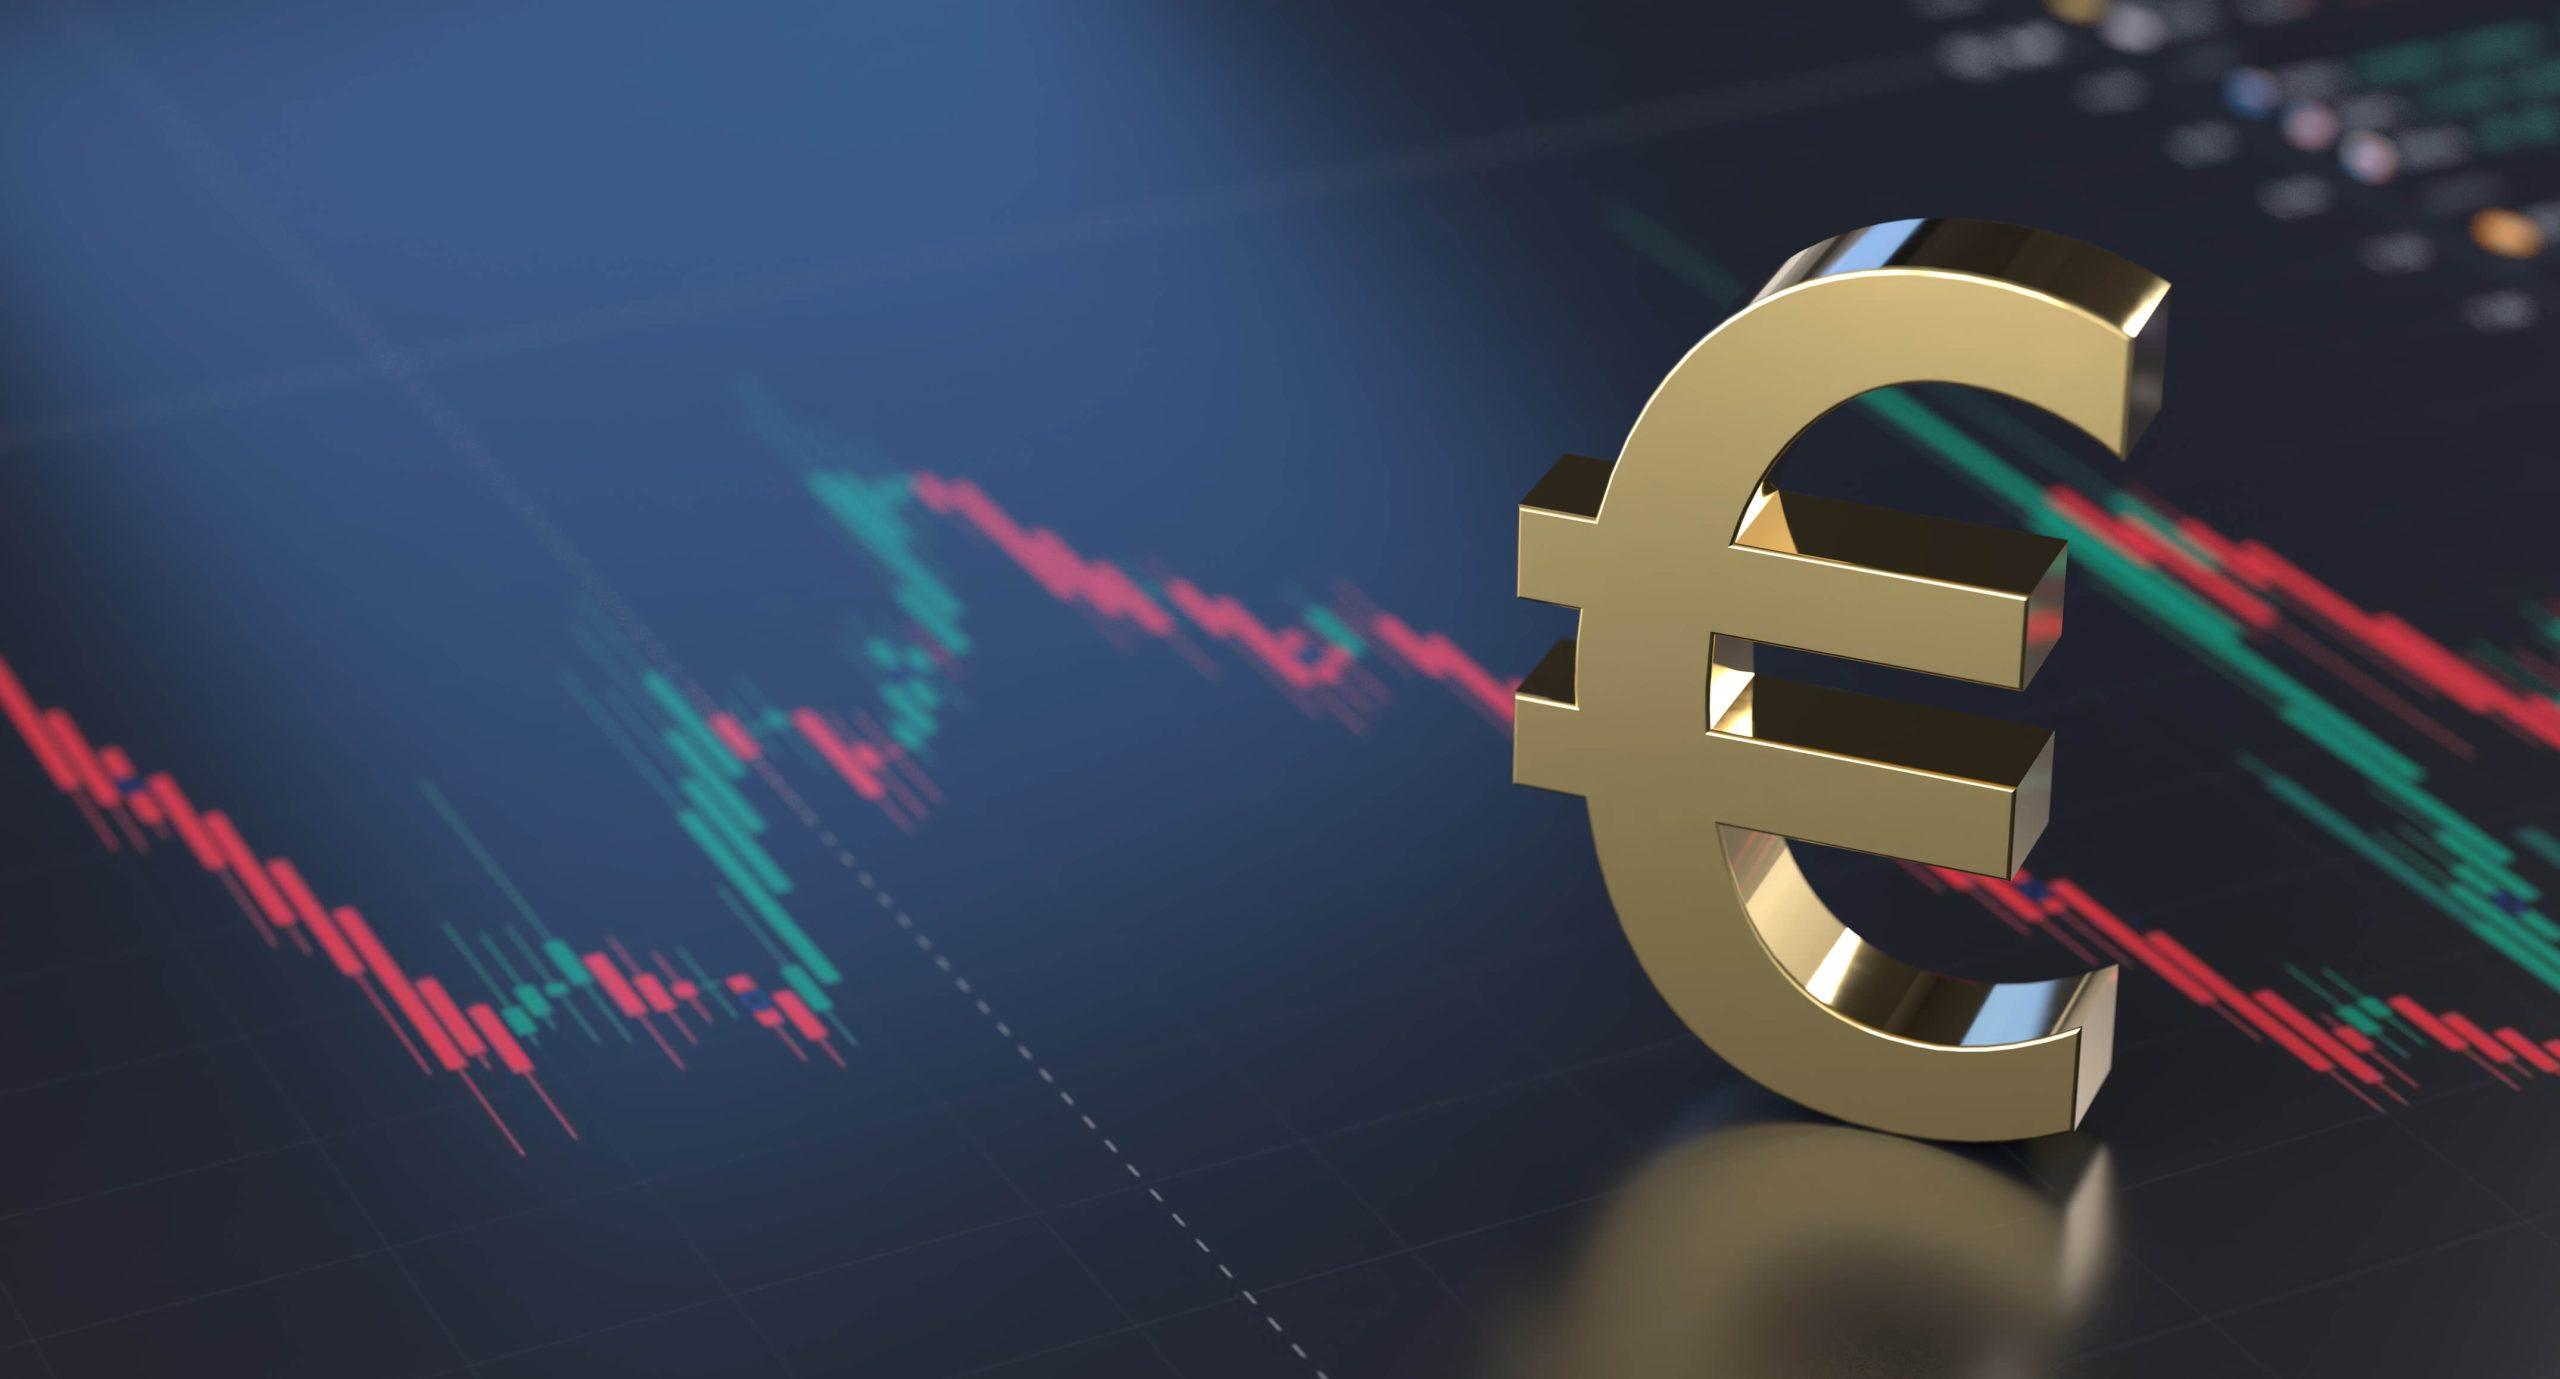 التضخم في منطقة اليورو يتسارع إلى مستوى قياسي جديد￼￼￼￼ ￼